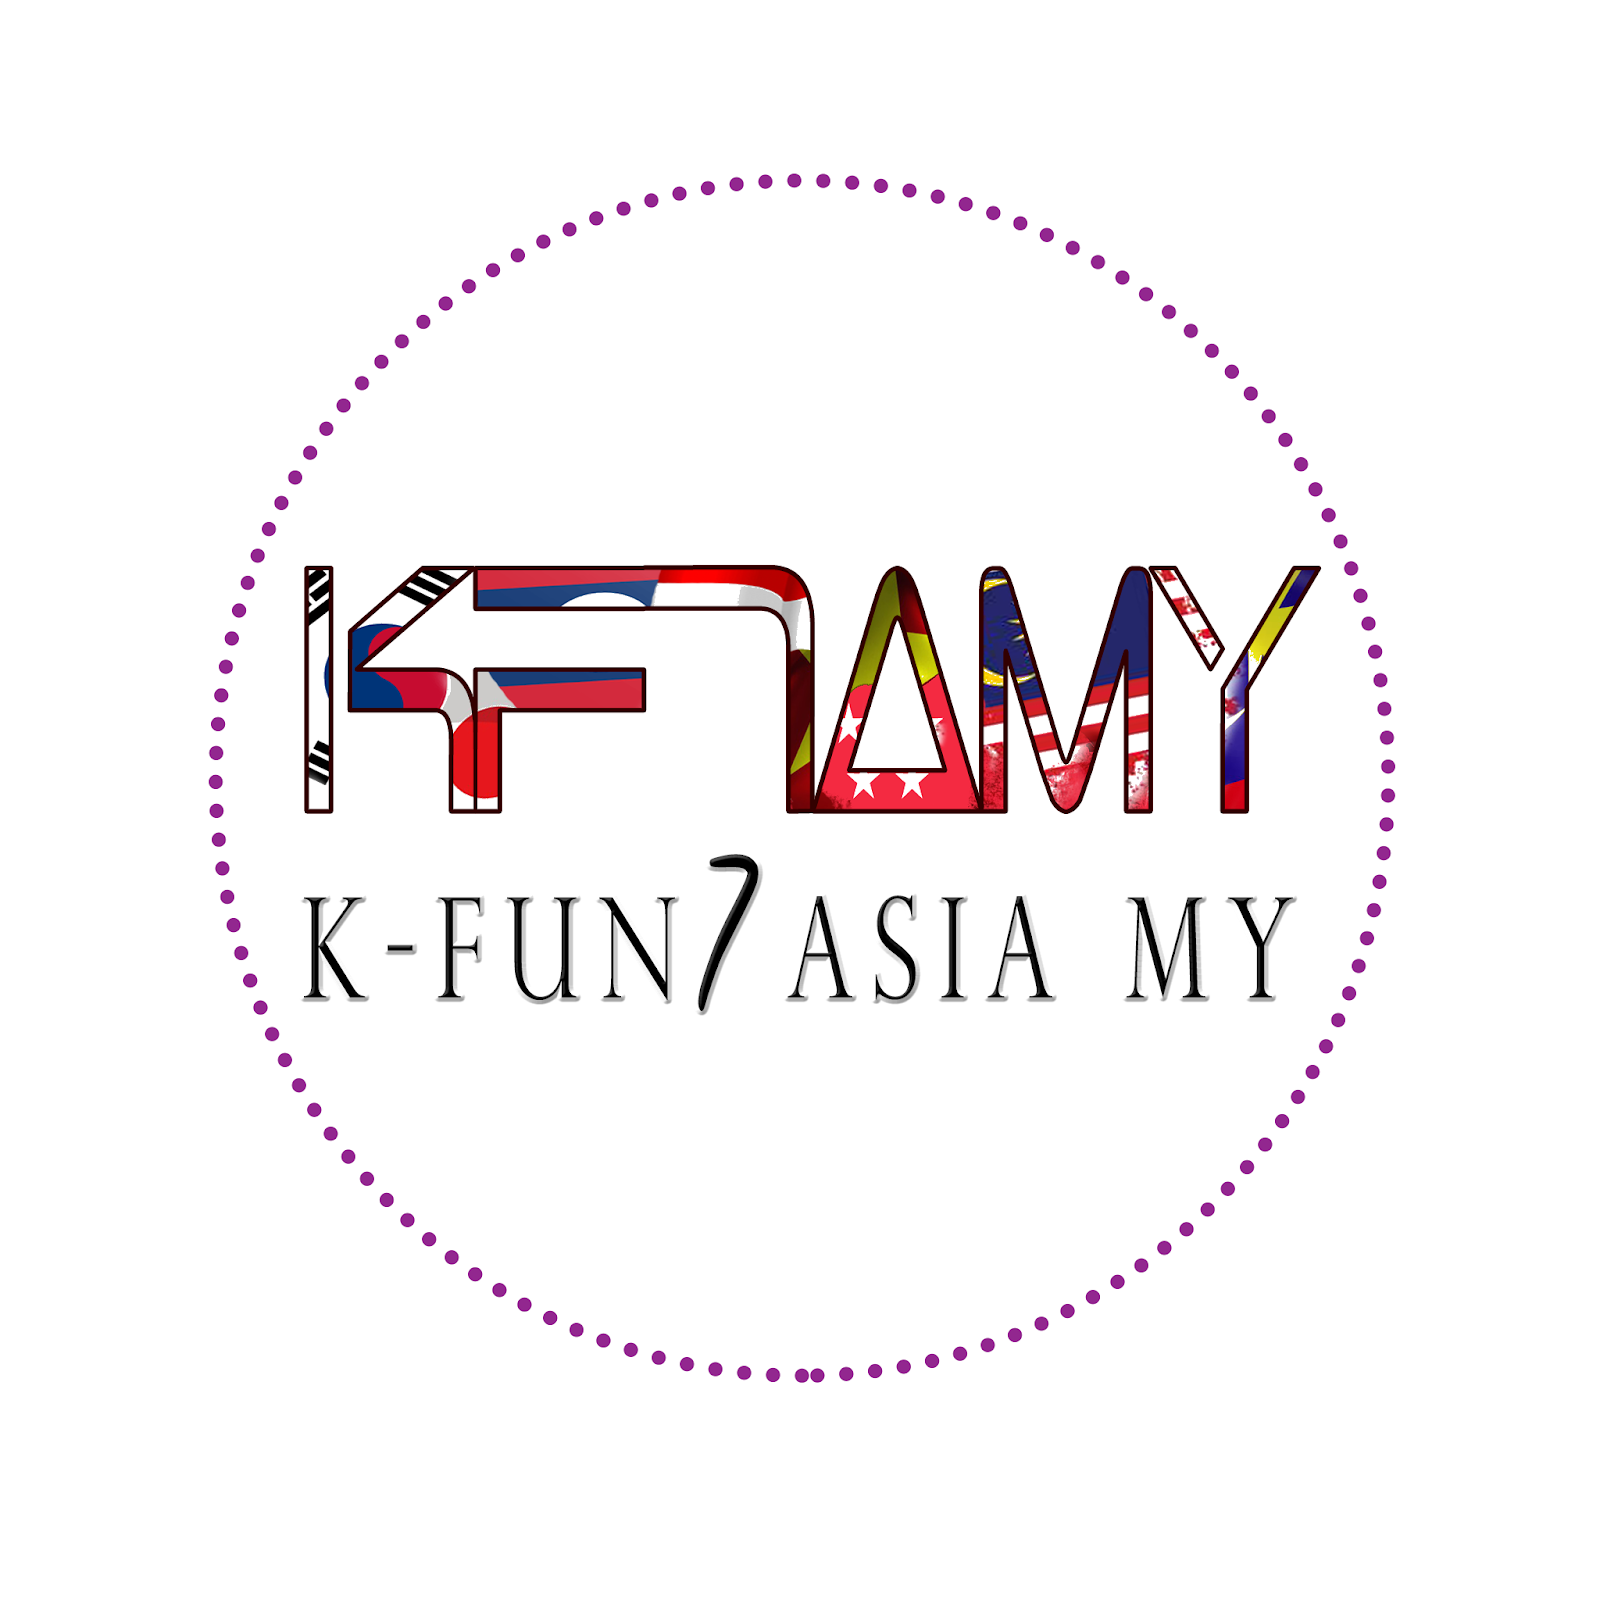 K-Fun7asia MY